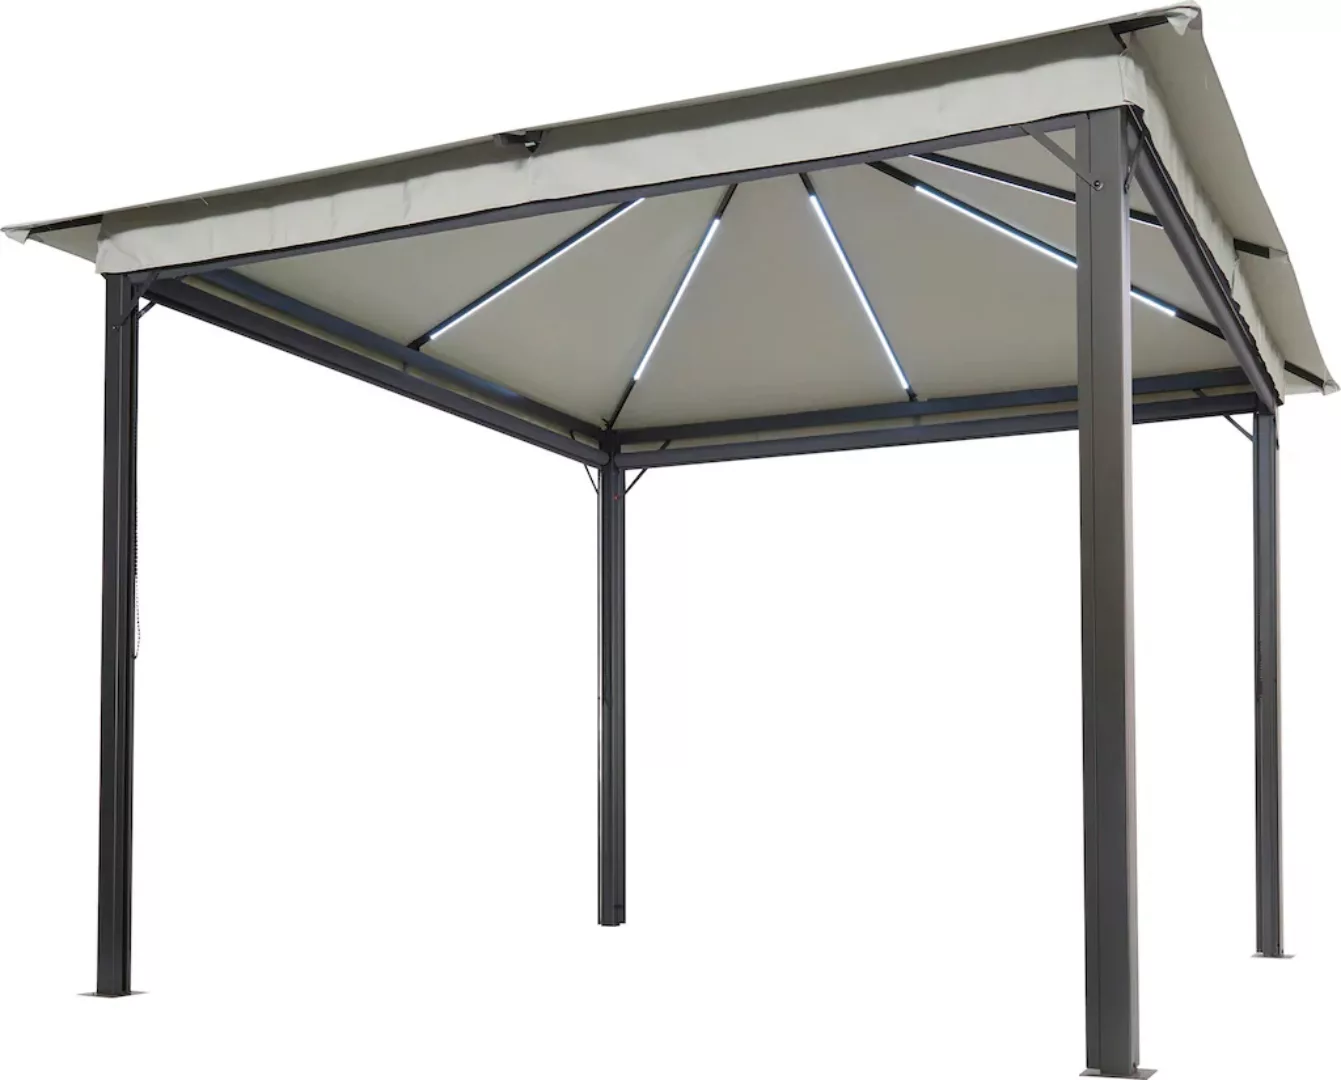 Leco Pavillon "Solar LINA", 300x300 cm, grau mit LED und Gittergewebe-Rollo günstig online kaufen